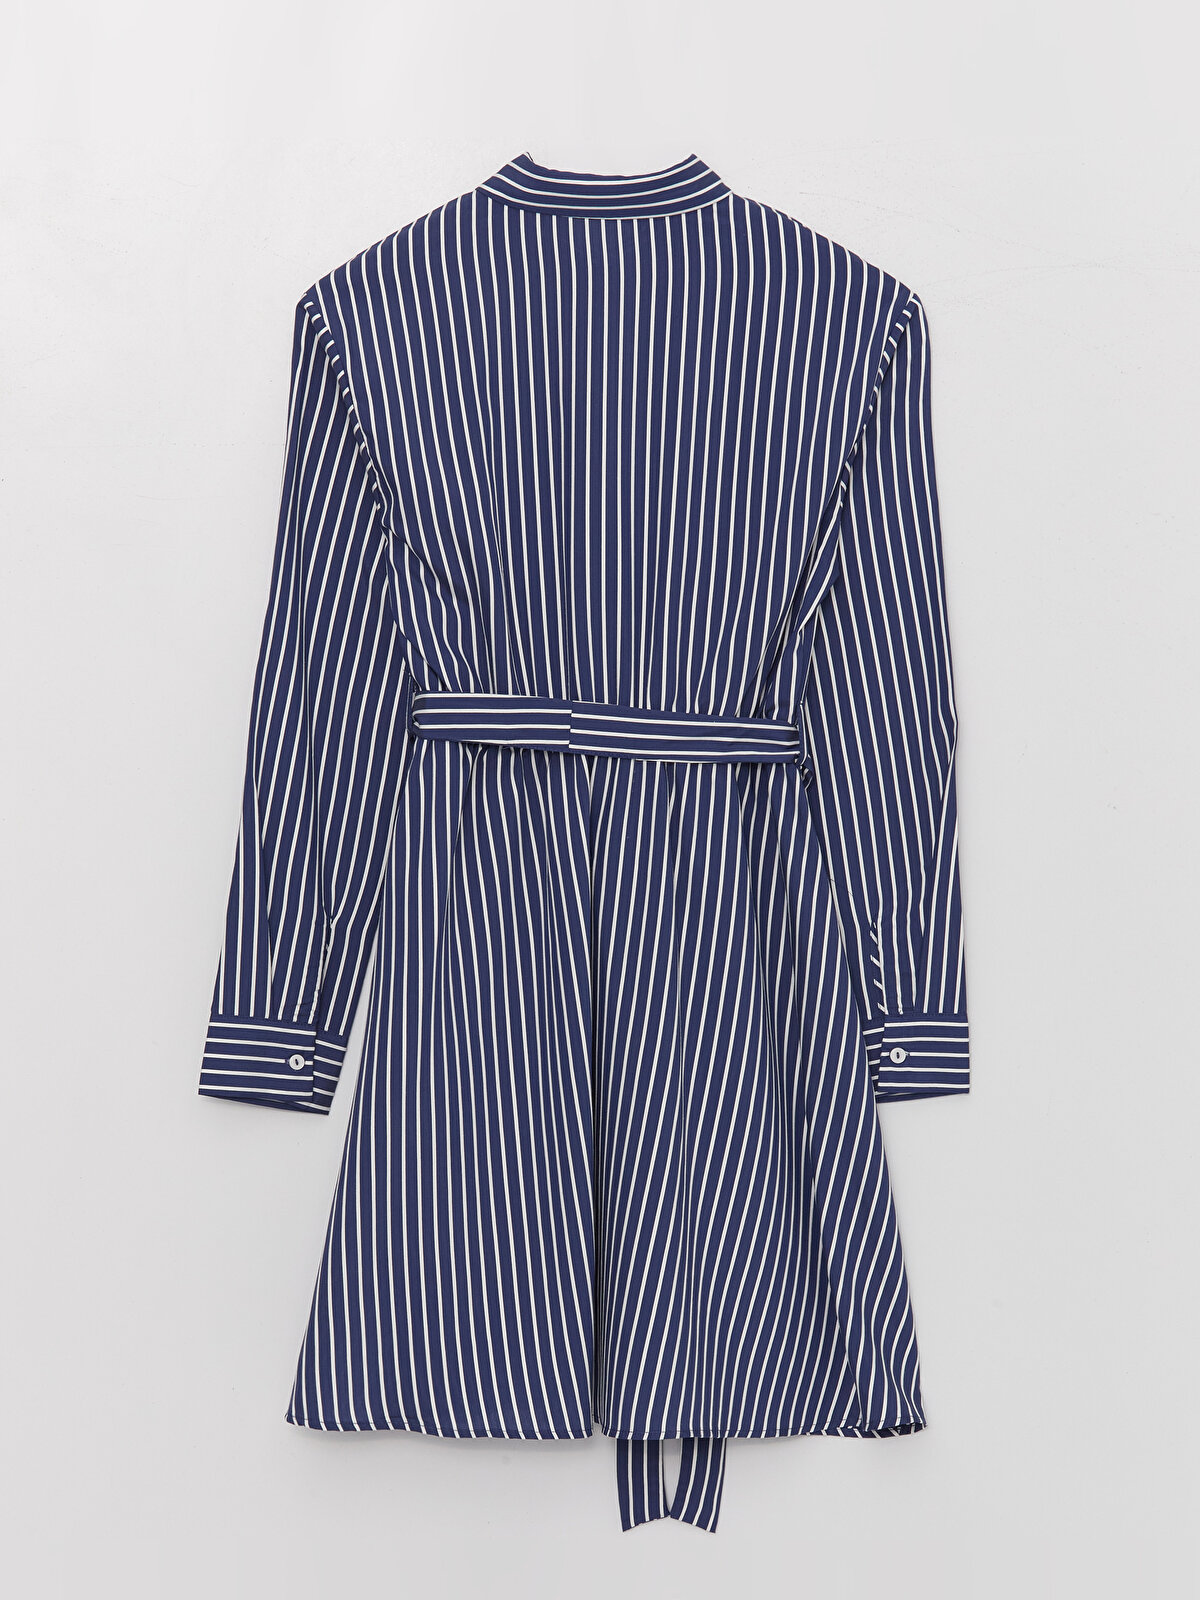 Striped Long Sleeve Poplin Women's Shirt Dress -W3CS23Z8-LGS 